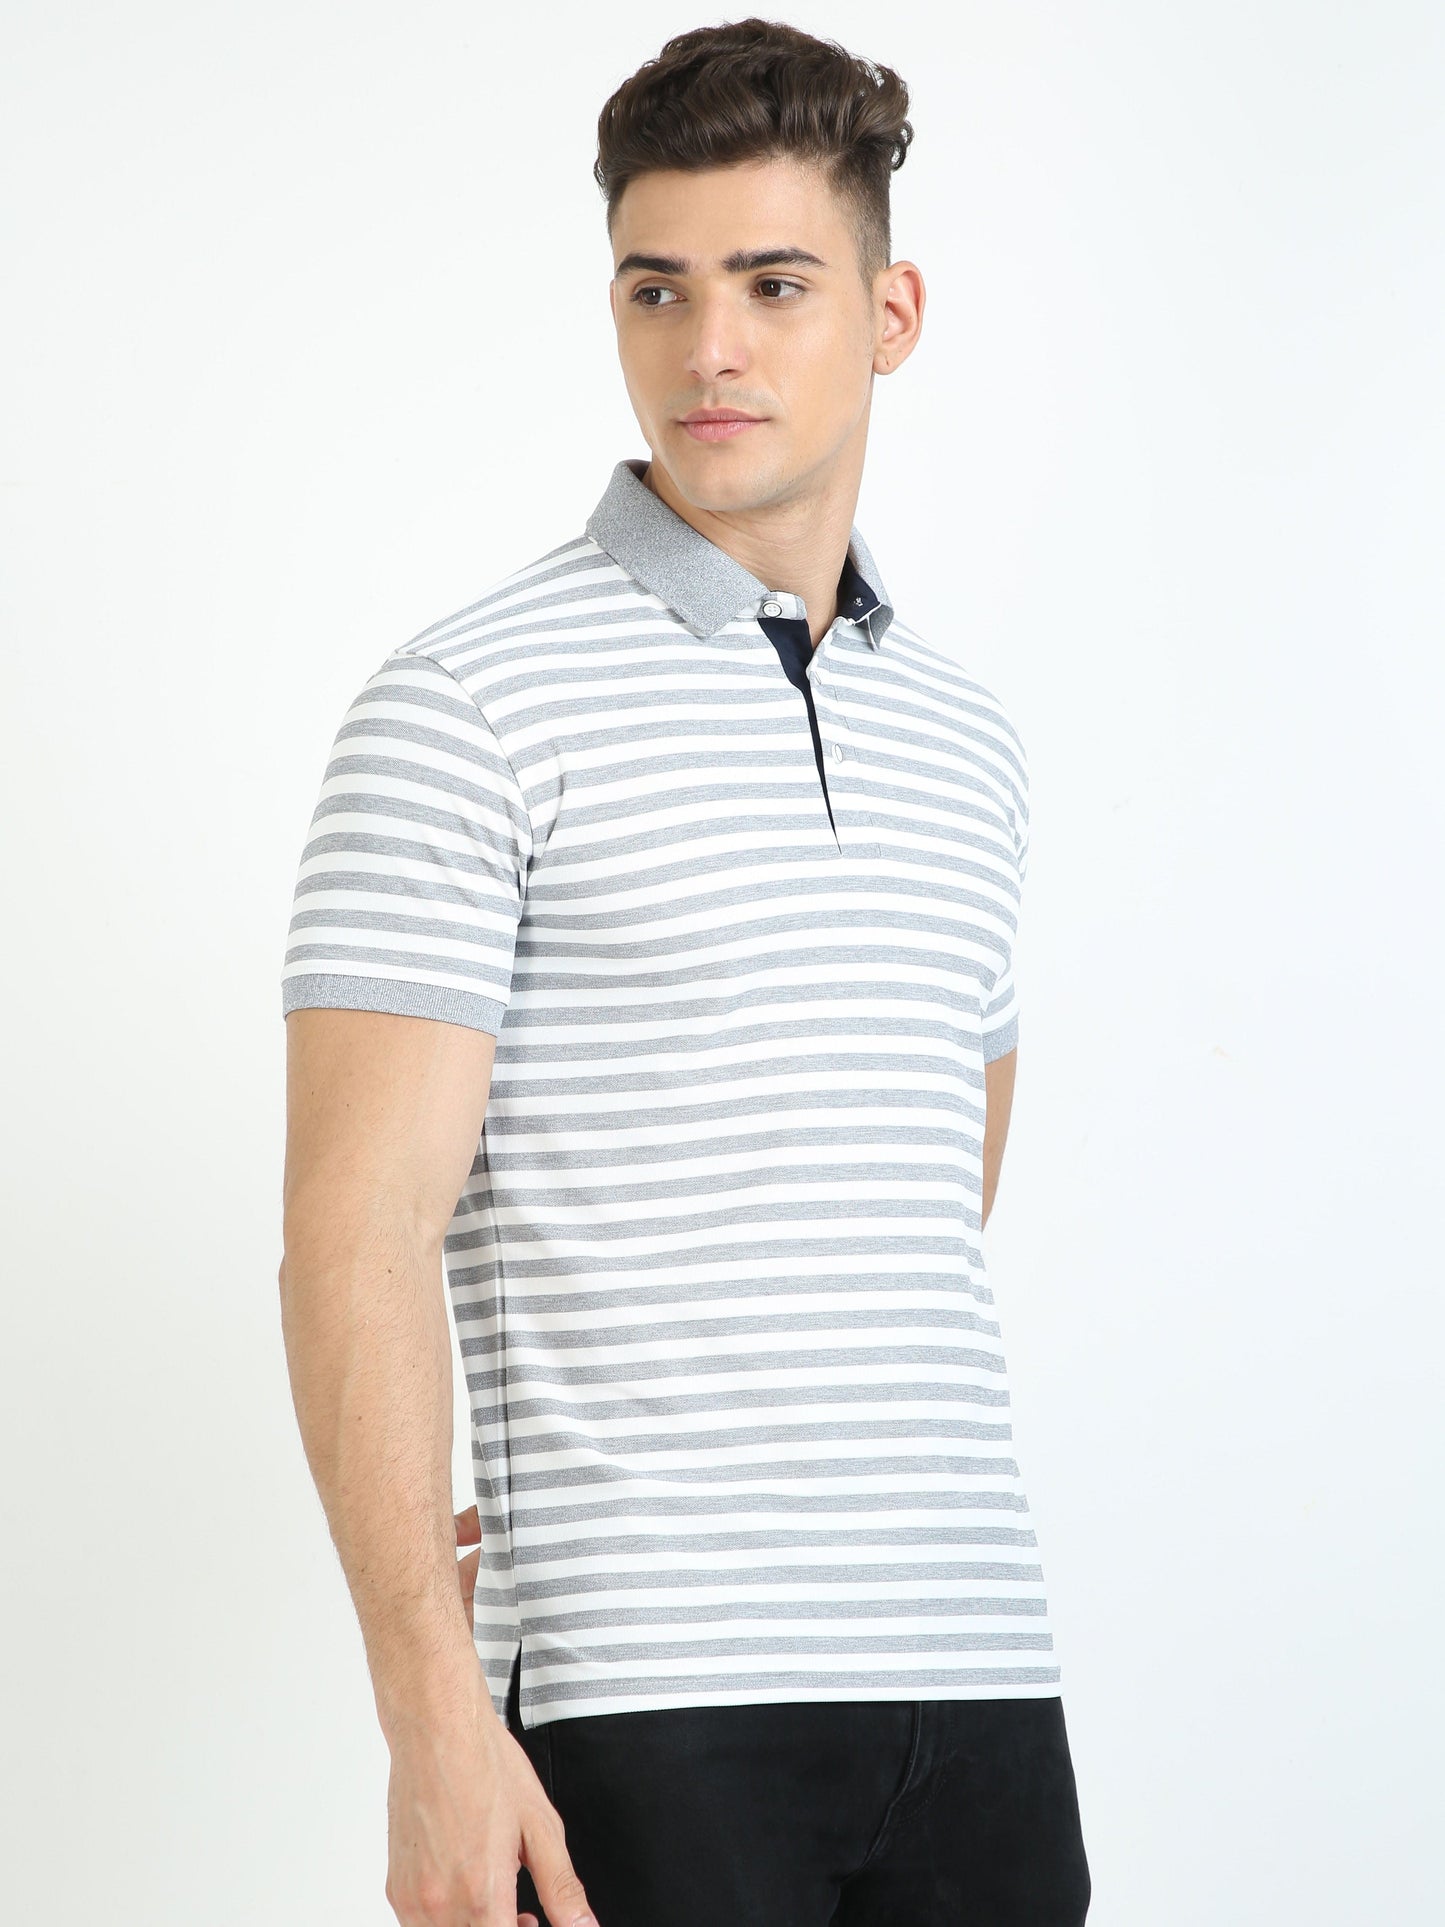 White & Grey Stripe Men's Polo T-shirt